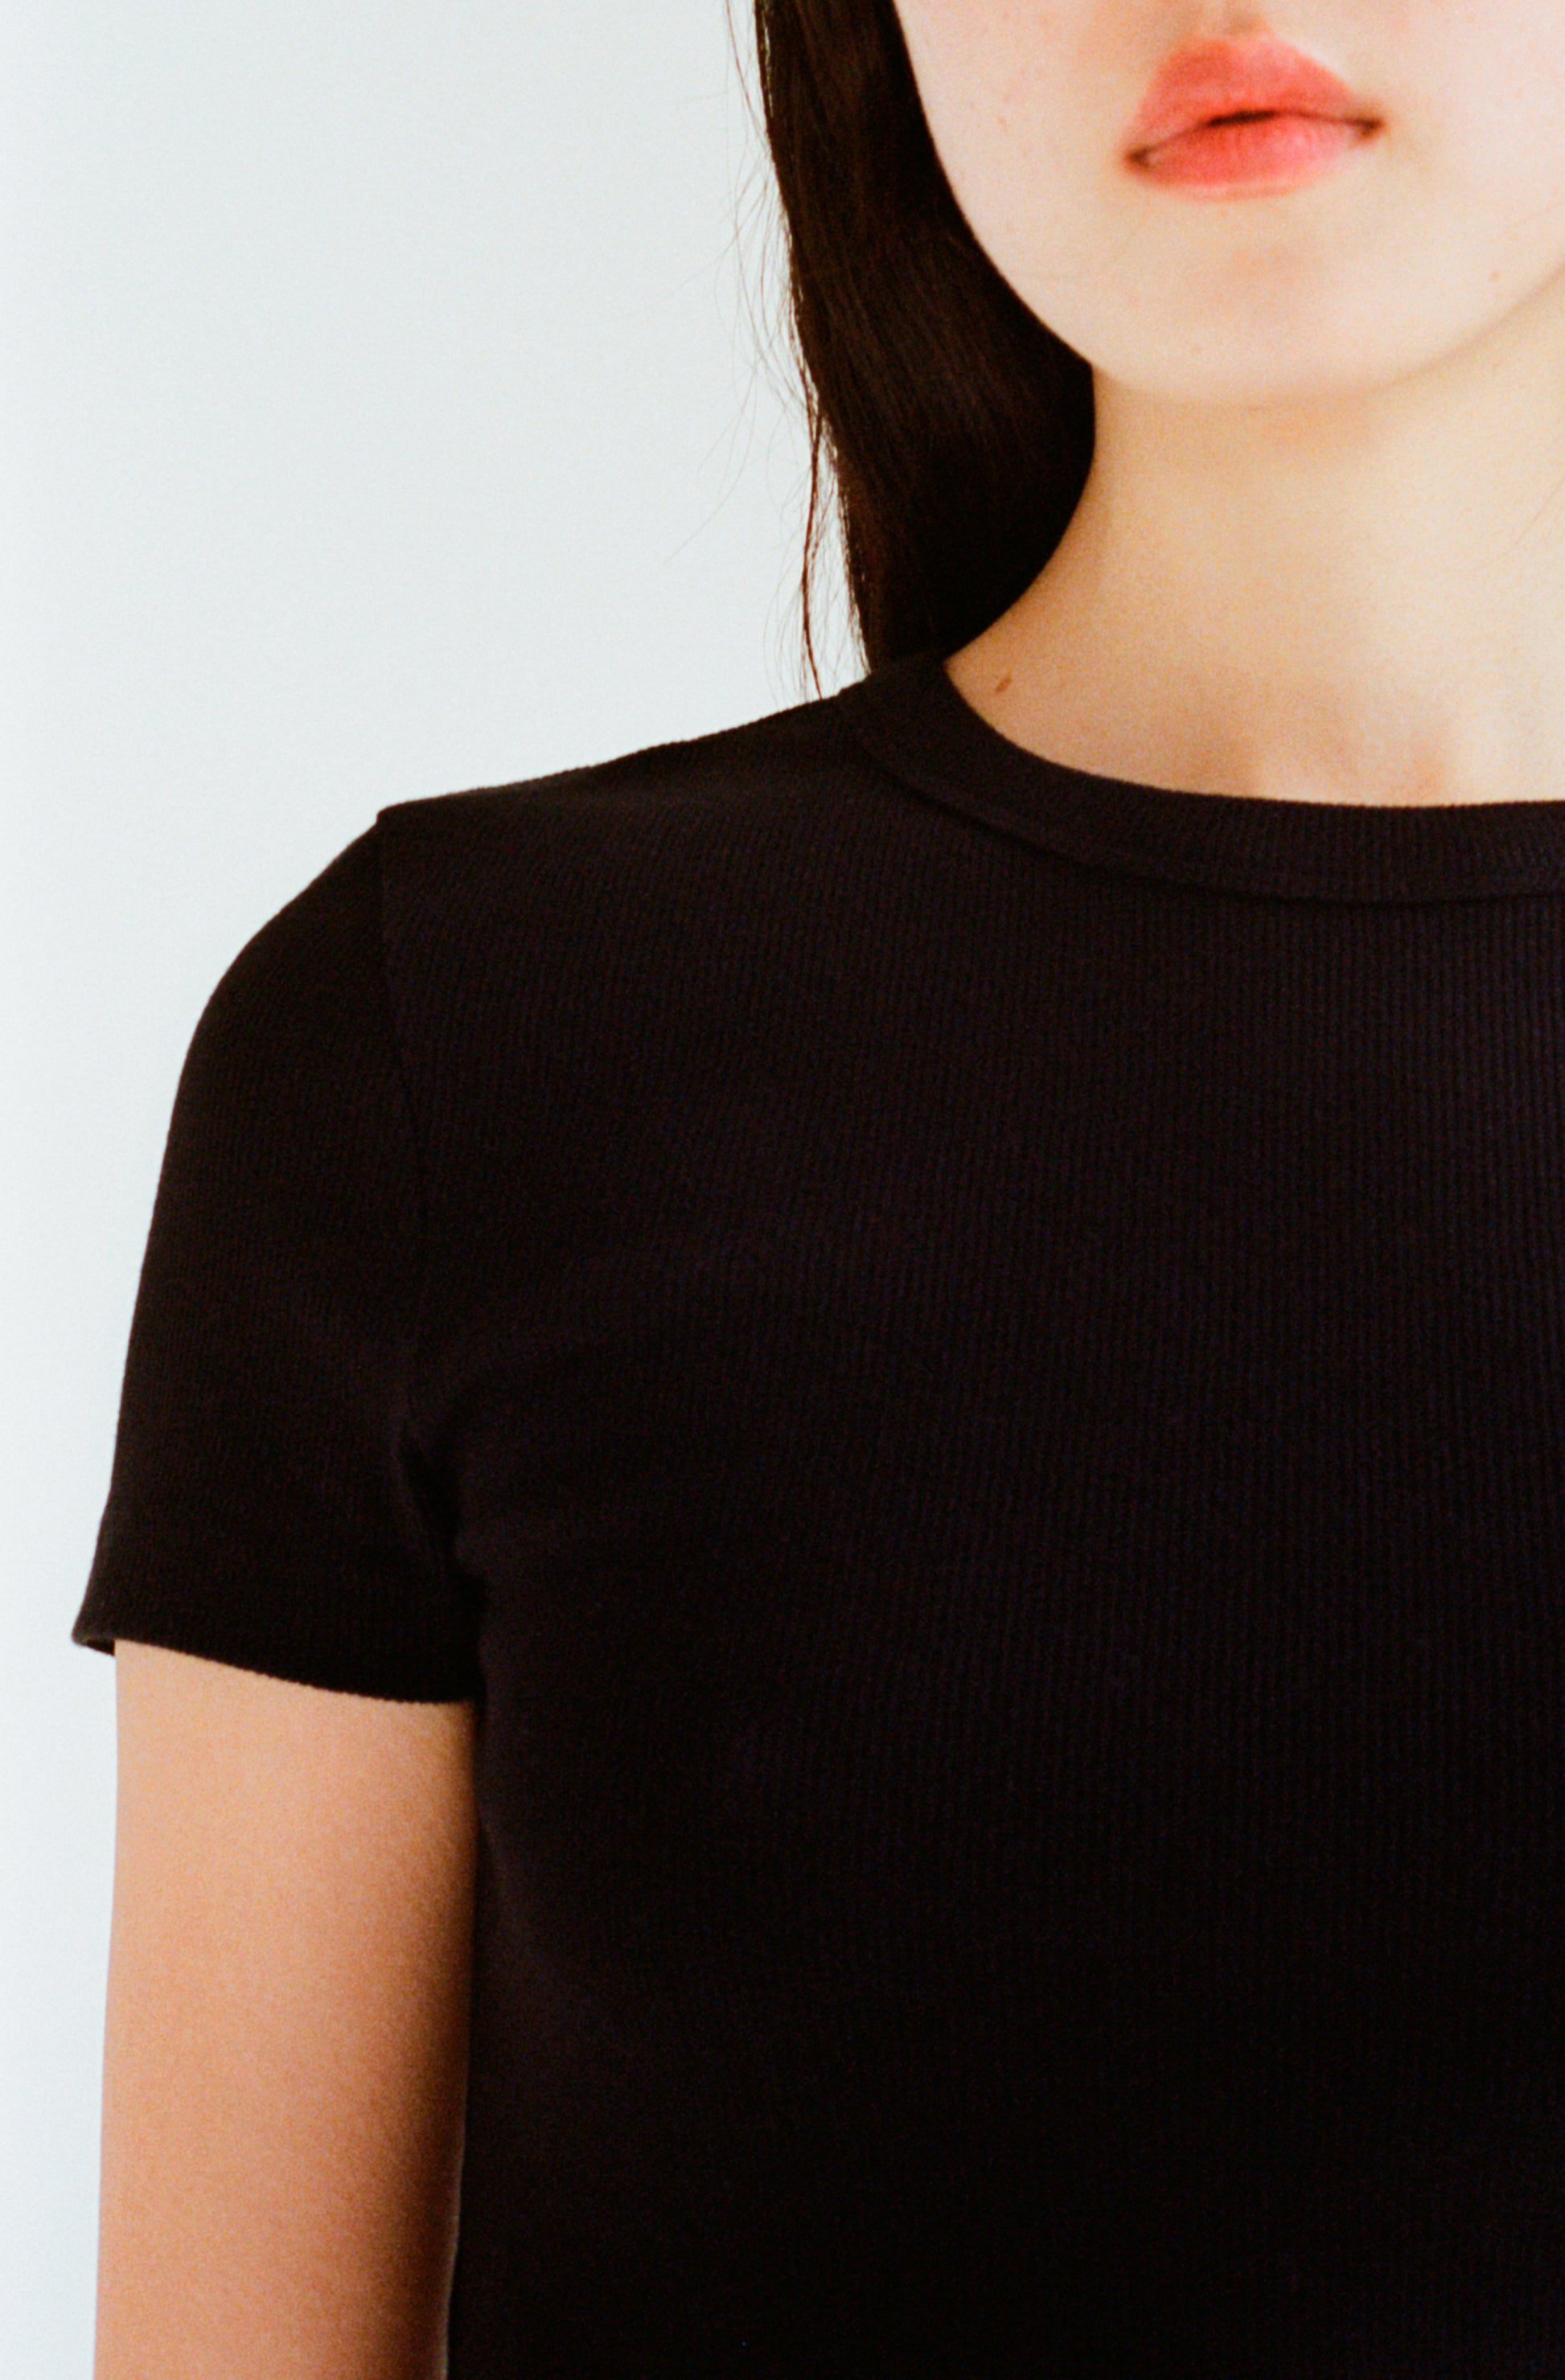 Le t-shirt à manches courtes noir pour femme en coton côtelé bio OMEAR, vue détaillée du col et d'une manche